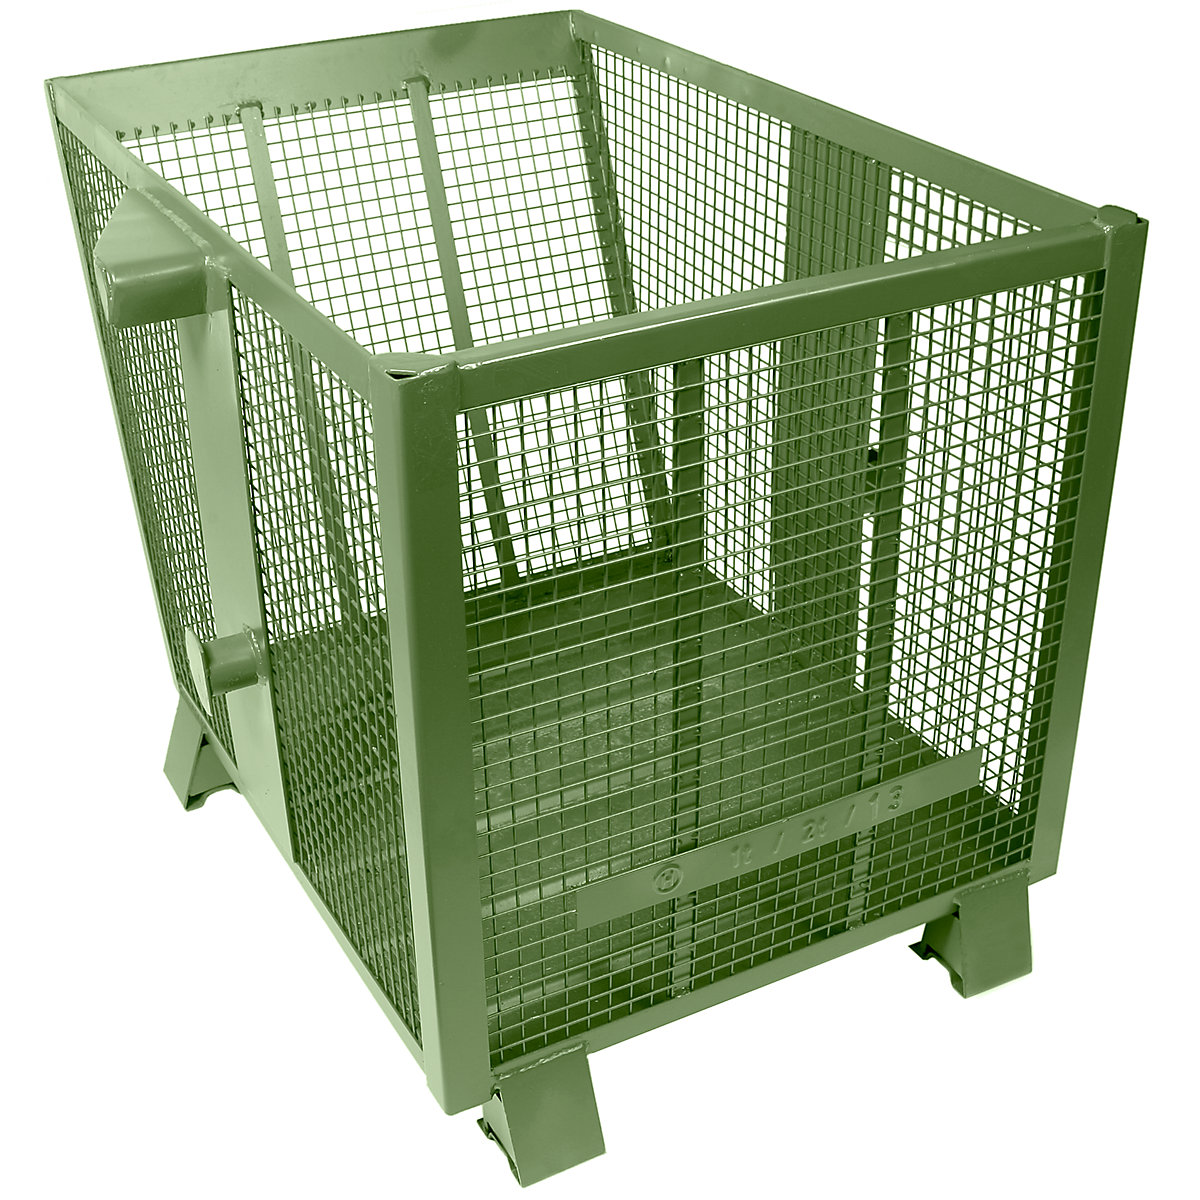 Gitterkippbehälter Heson, Volumen 0,6 m³, grün RAL 6011-4